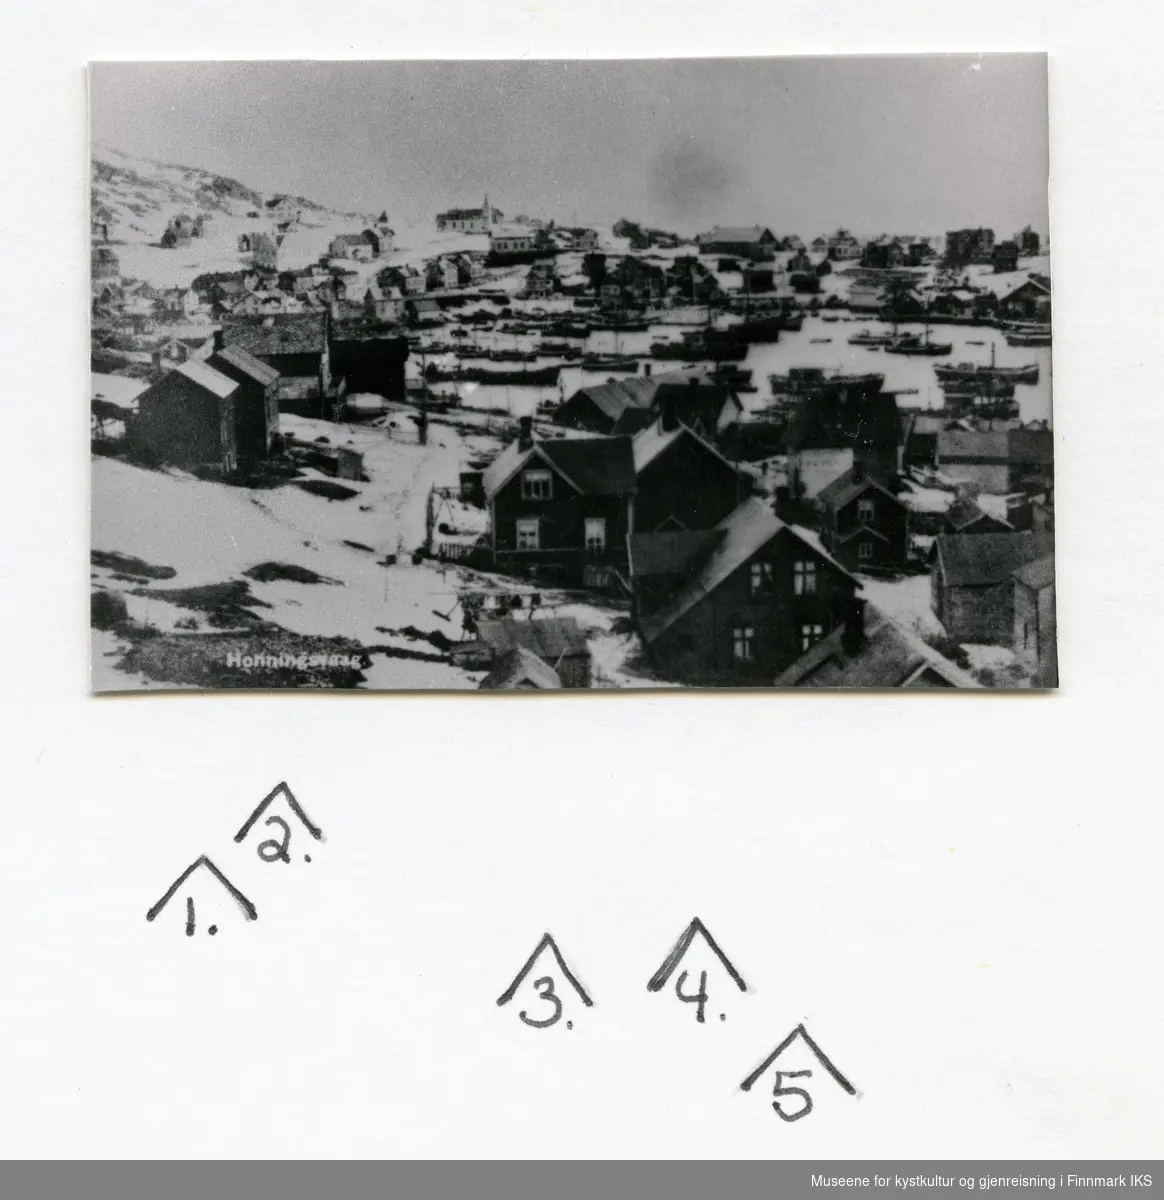 Postkortmotiv. Bebyggelsen i Honningsvåg. Mange båter i Indre havn. Kirka i bakgrunnen. 1930-årene.